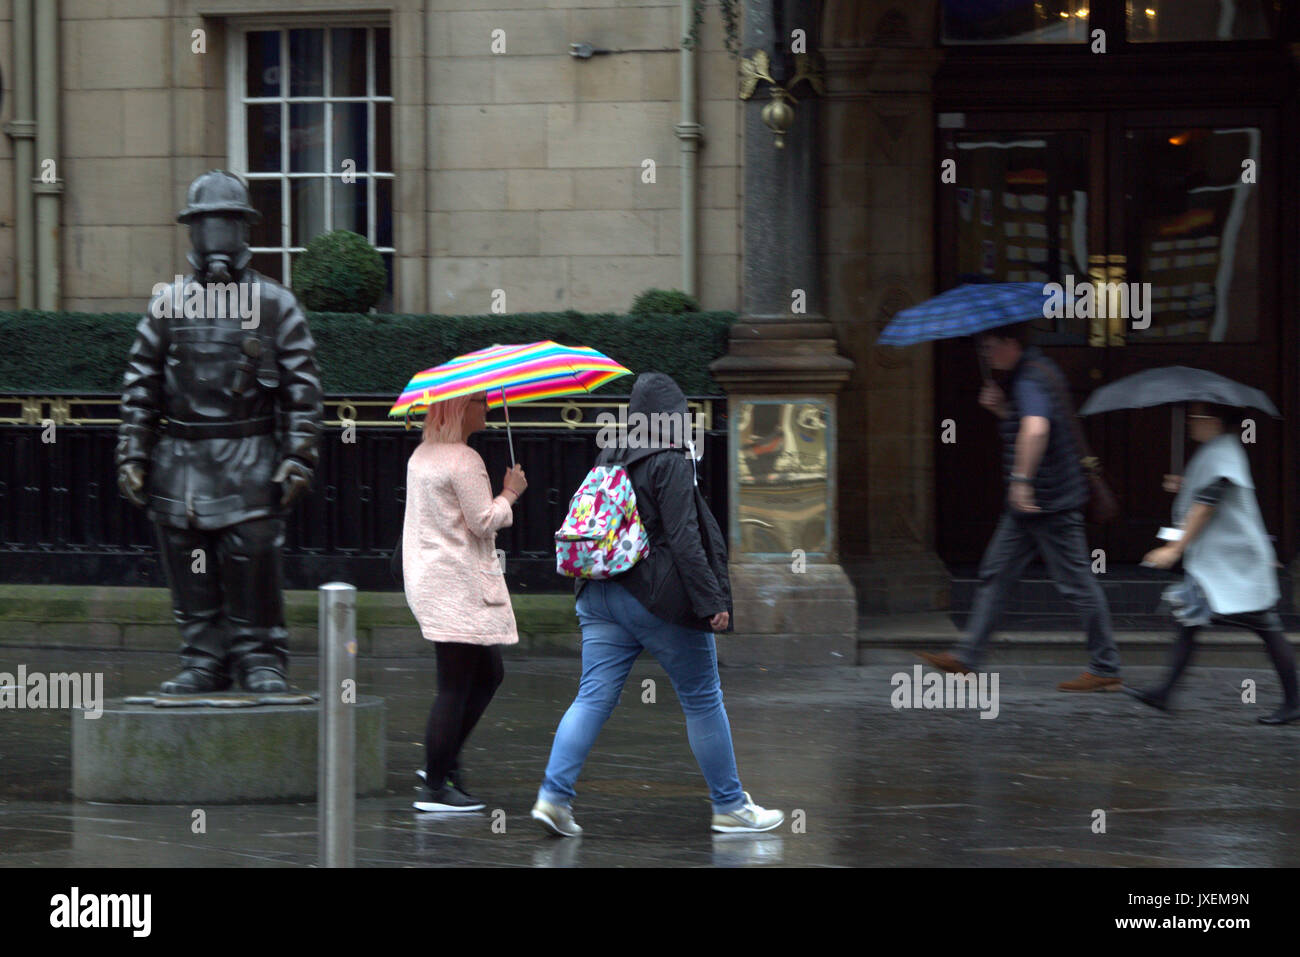 Glasgow, Schottland, Großbritannien. 16 Aug, 2017. Regen im Zentrum von Glasgow's Station 911 Feuerwehrmann Statue als Touristen entdecken Sie die Tatsache, dass es die regenreichste Stadt in Großbritannien. Gerard Fähre / alamy Nachrichten Stockfoto